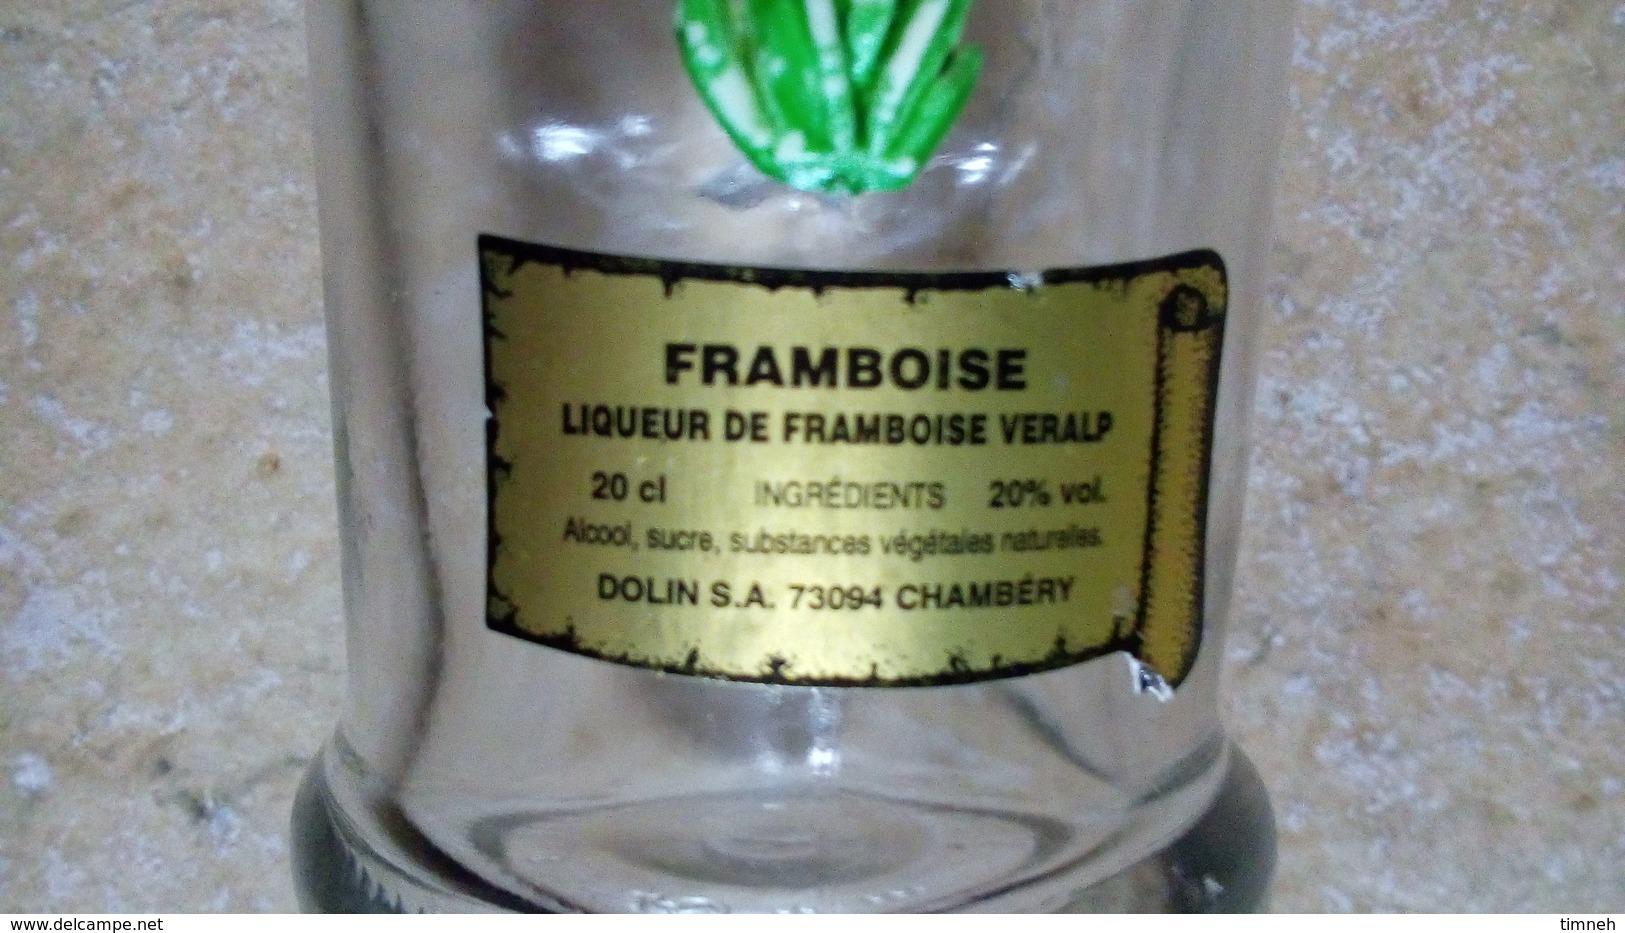 LIQUEUR FRAMBOISE VERALP - PETITE (20cl) BOUTEILLE VERRE - FLEUR GENTIANE Deco Plastique -DOLIN CHAMBERY - Spiritus